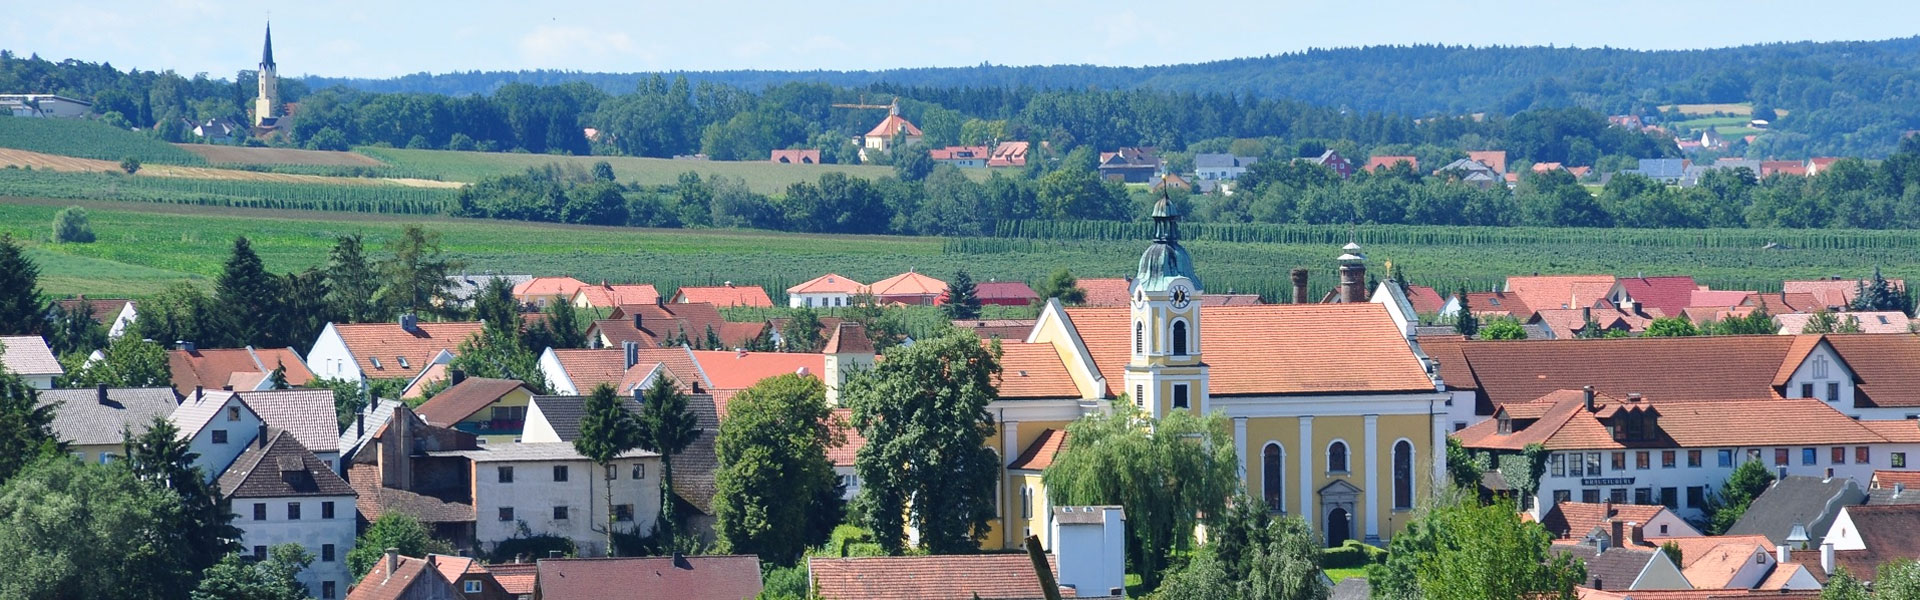 Headerbild - Ausblick auf Siegenburg